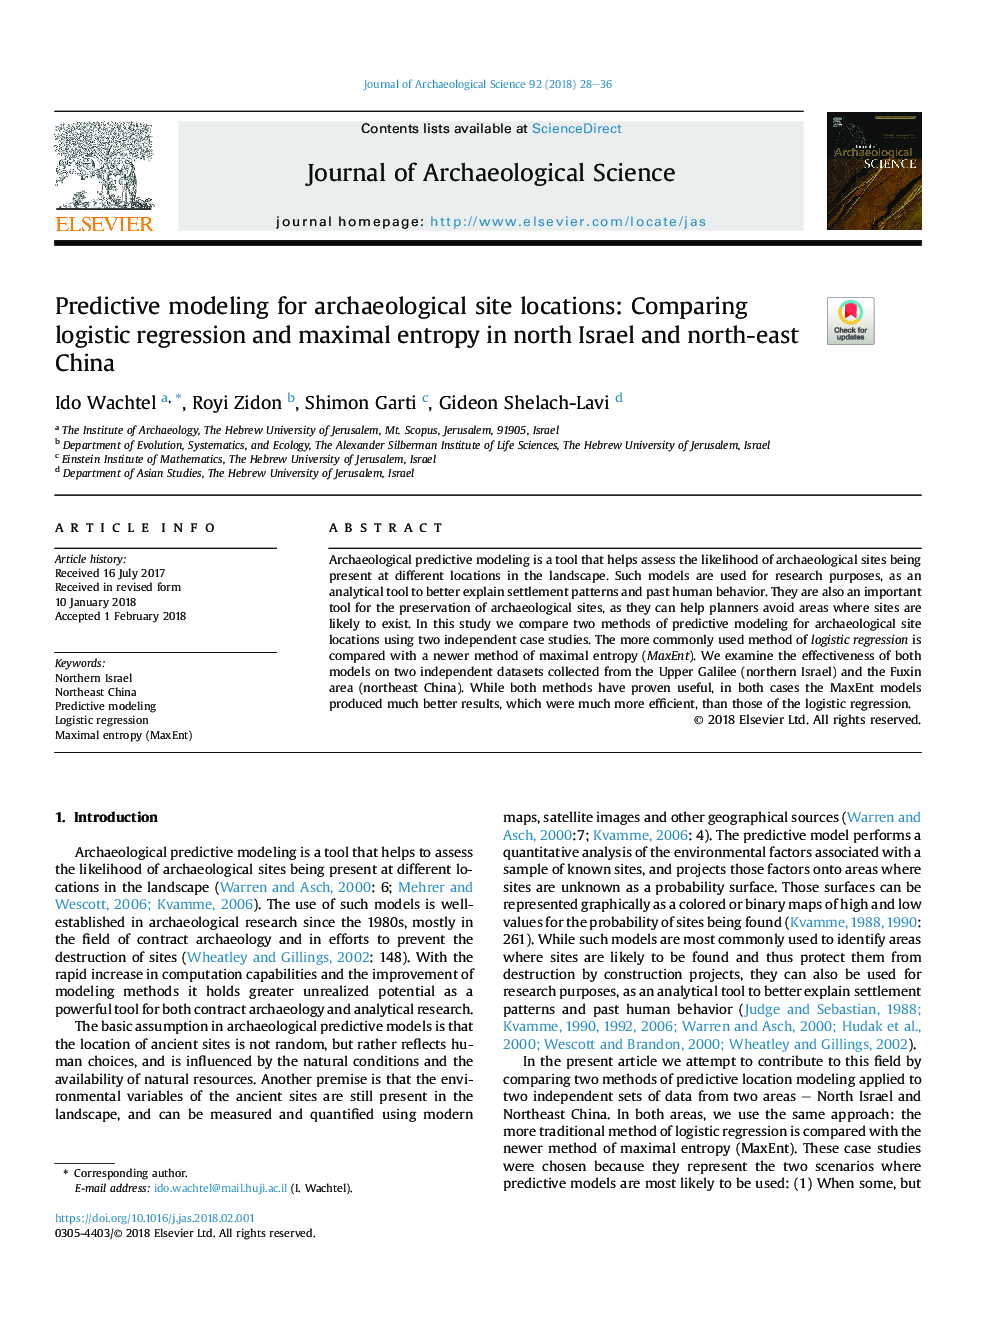 مدل سازی پیش بینی شده برای مکان های باستان شناسی: مقایسه رگرسیون لجستیک و انتروپی حداکثر در شمال اسرائیل و شمال شرق چین 